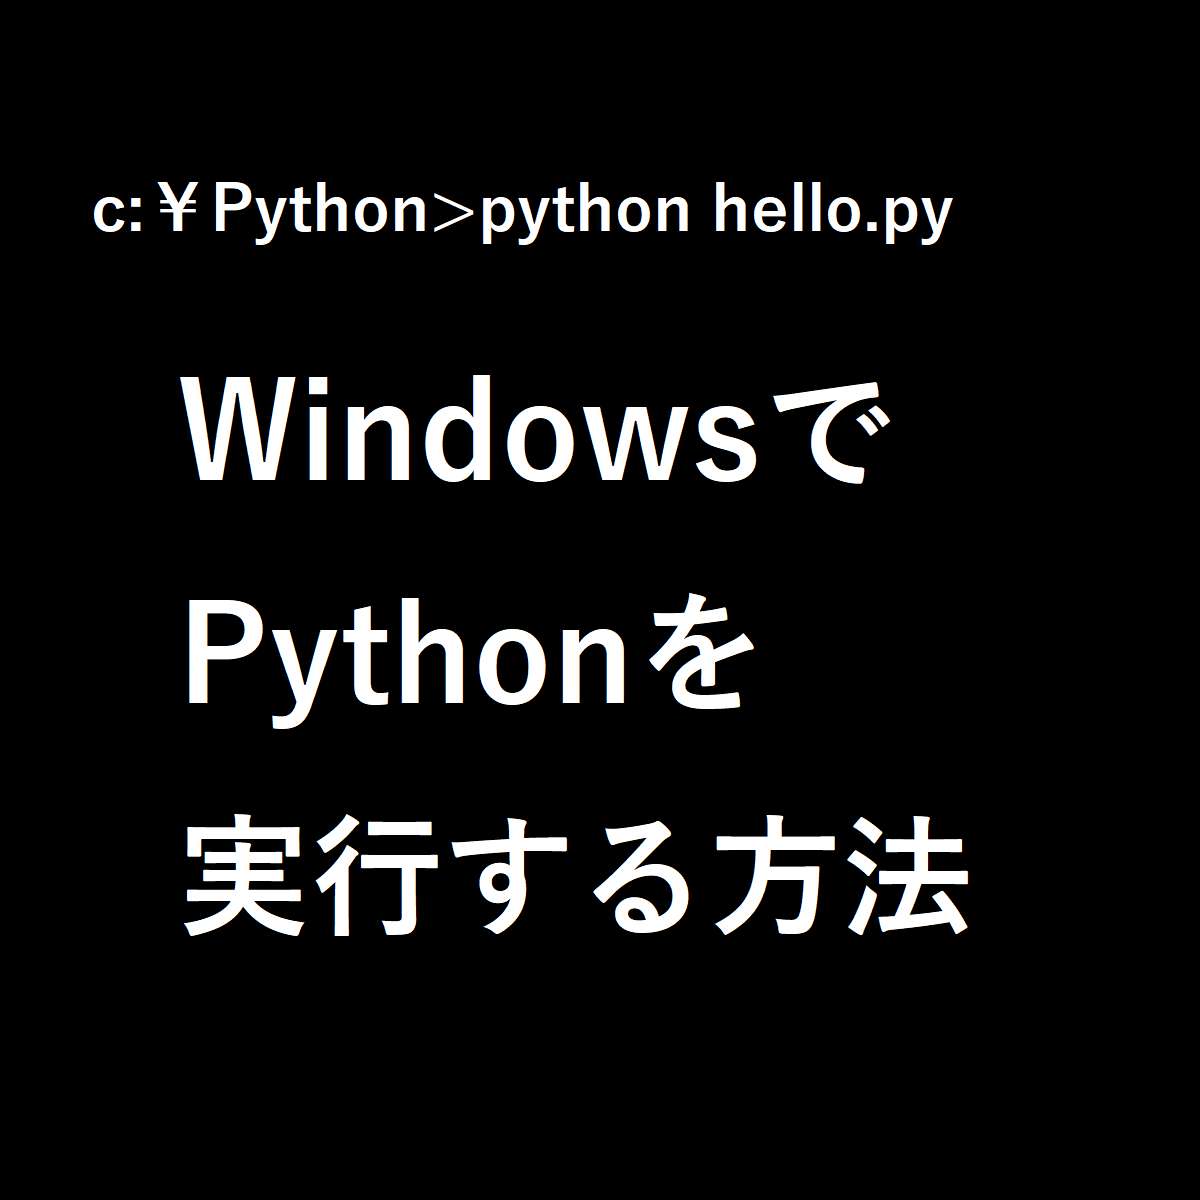 WindowsでPythonを実行する方法と書かれたサムネ。